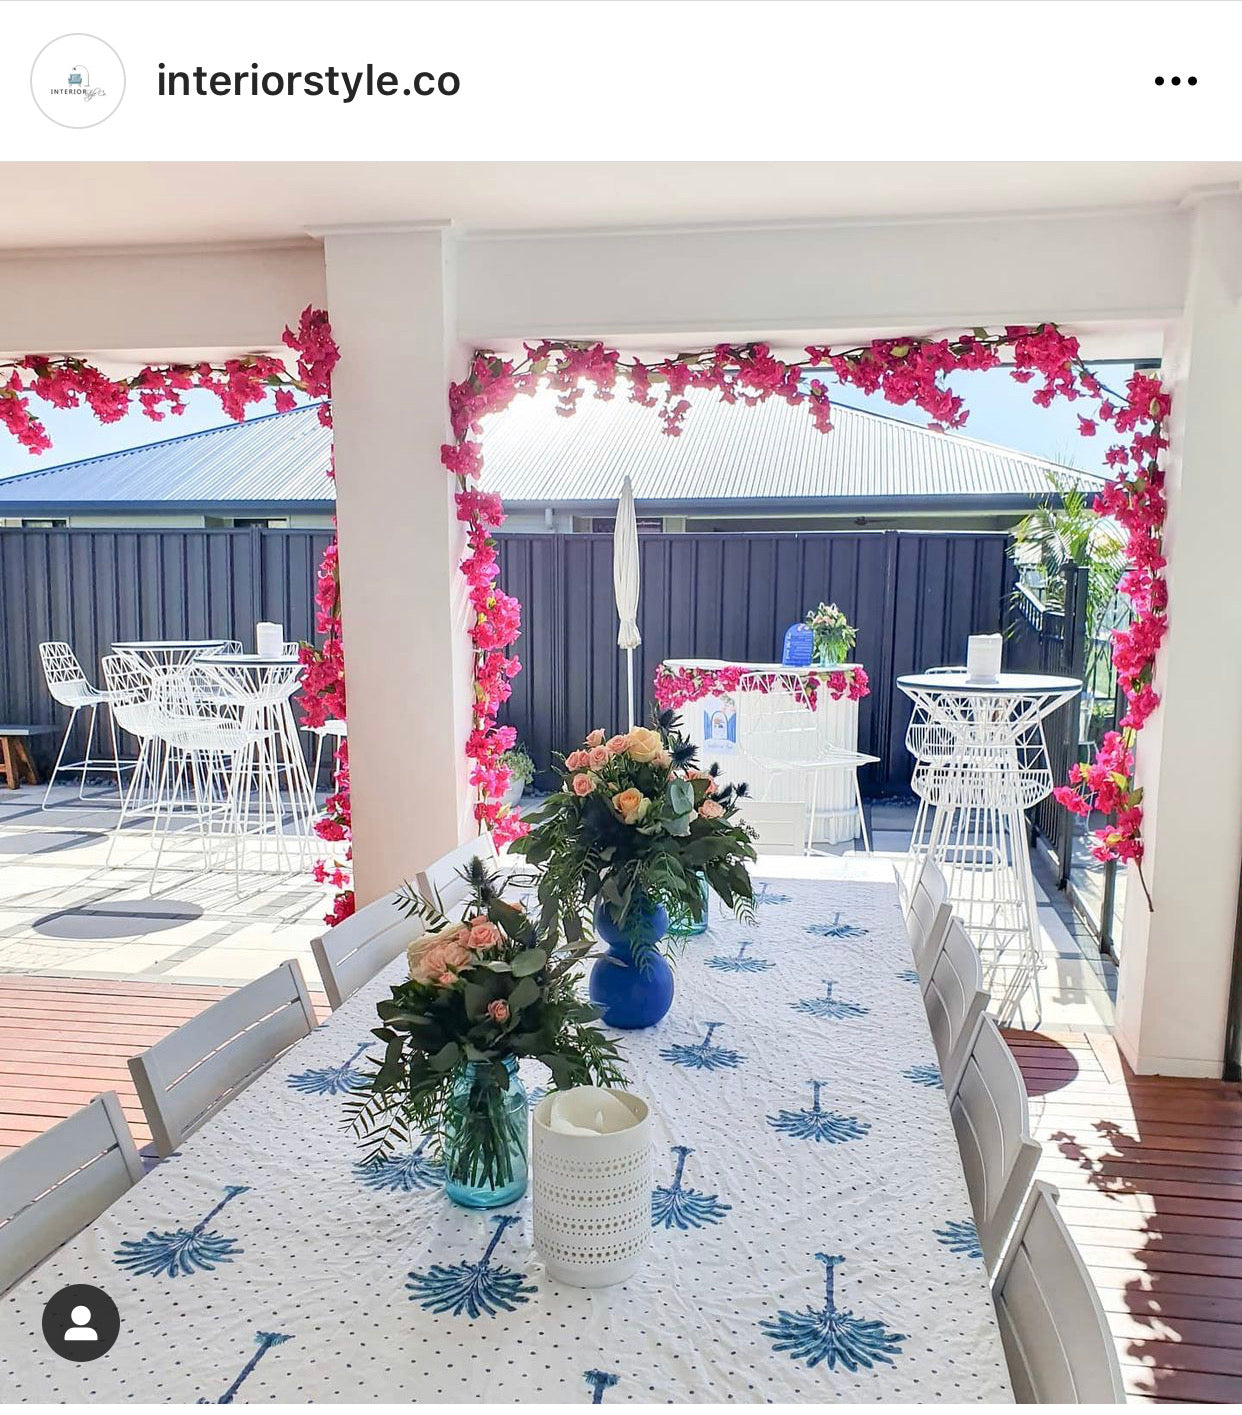 Boho Blue Palm Hamptons Round Tablecloth (180cm diamater)